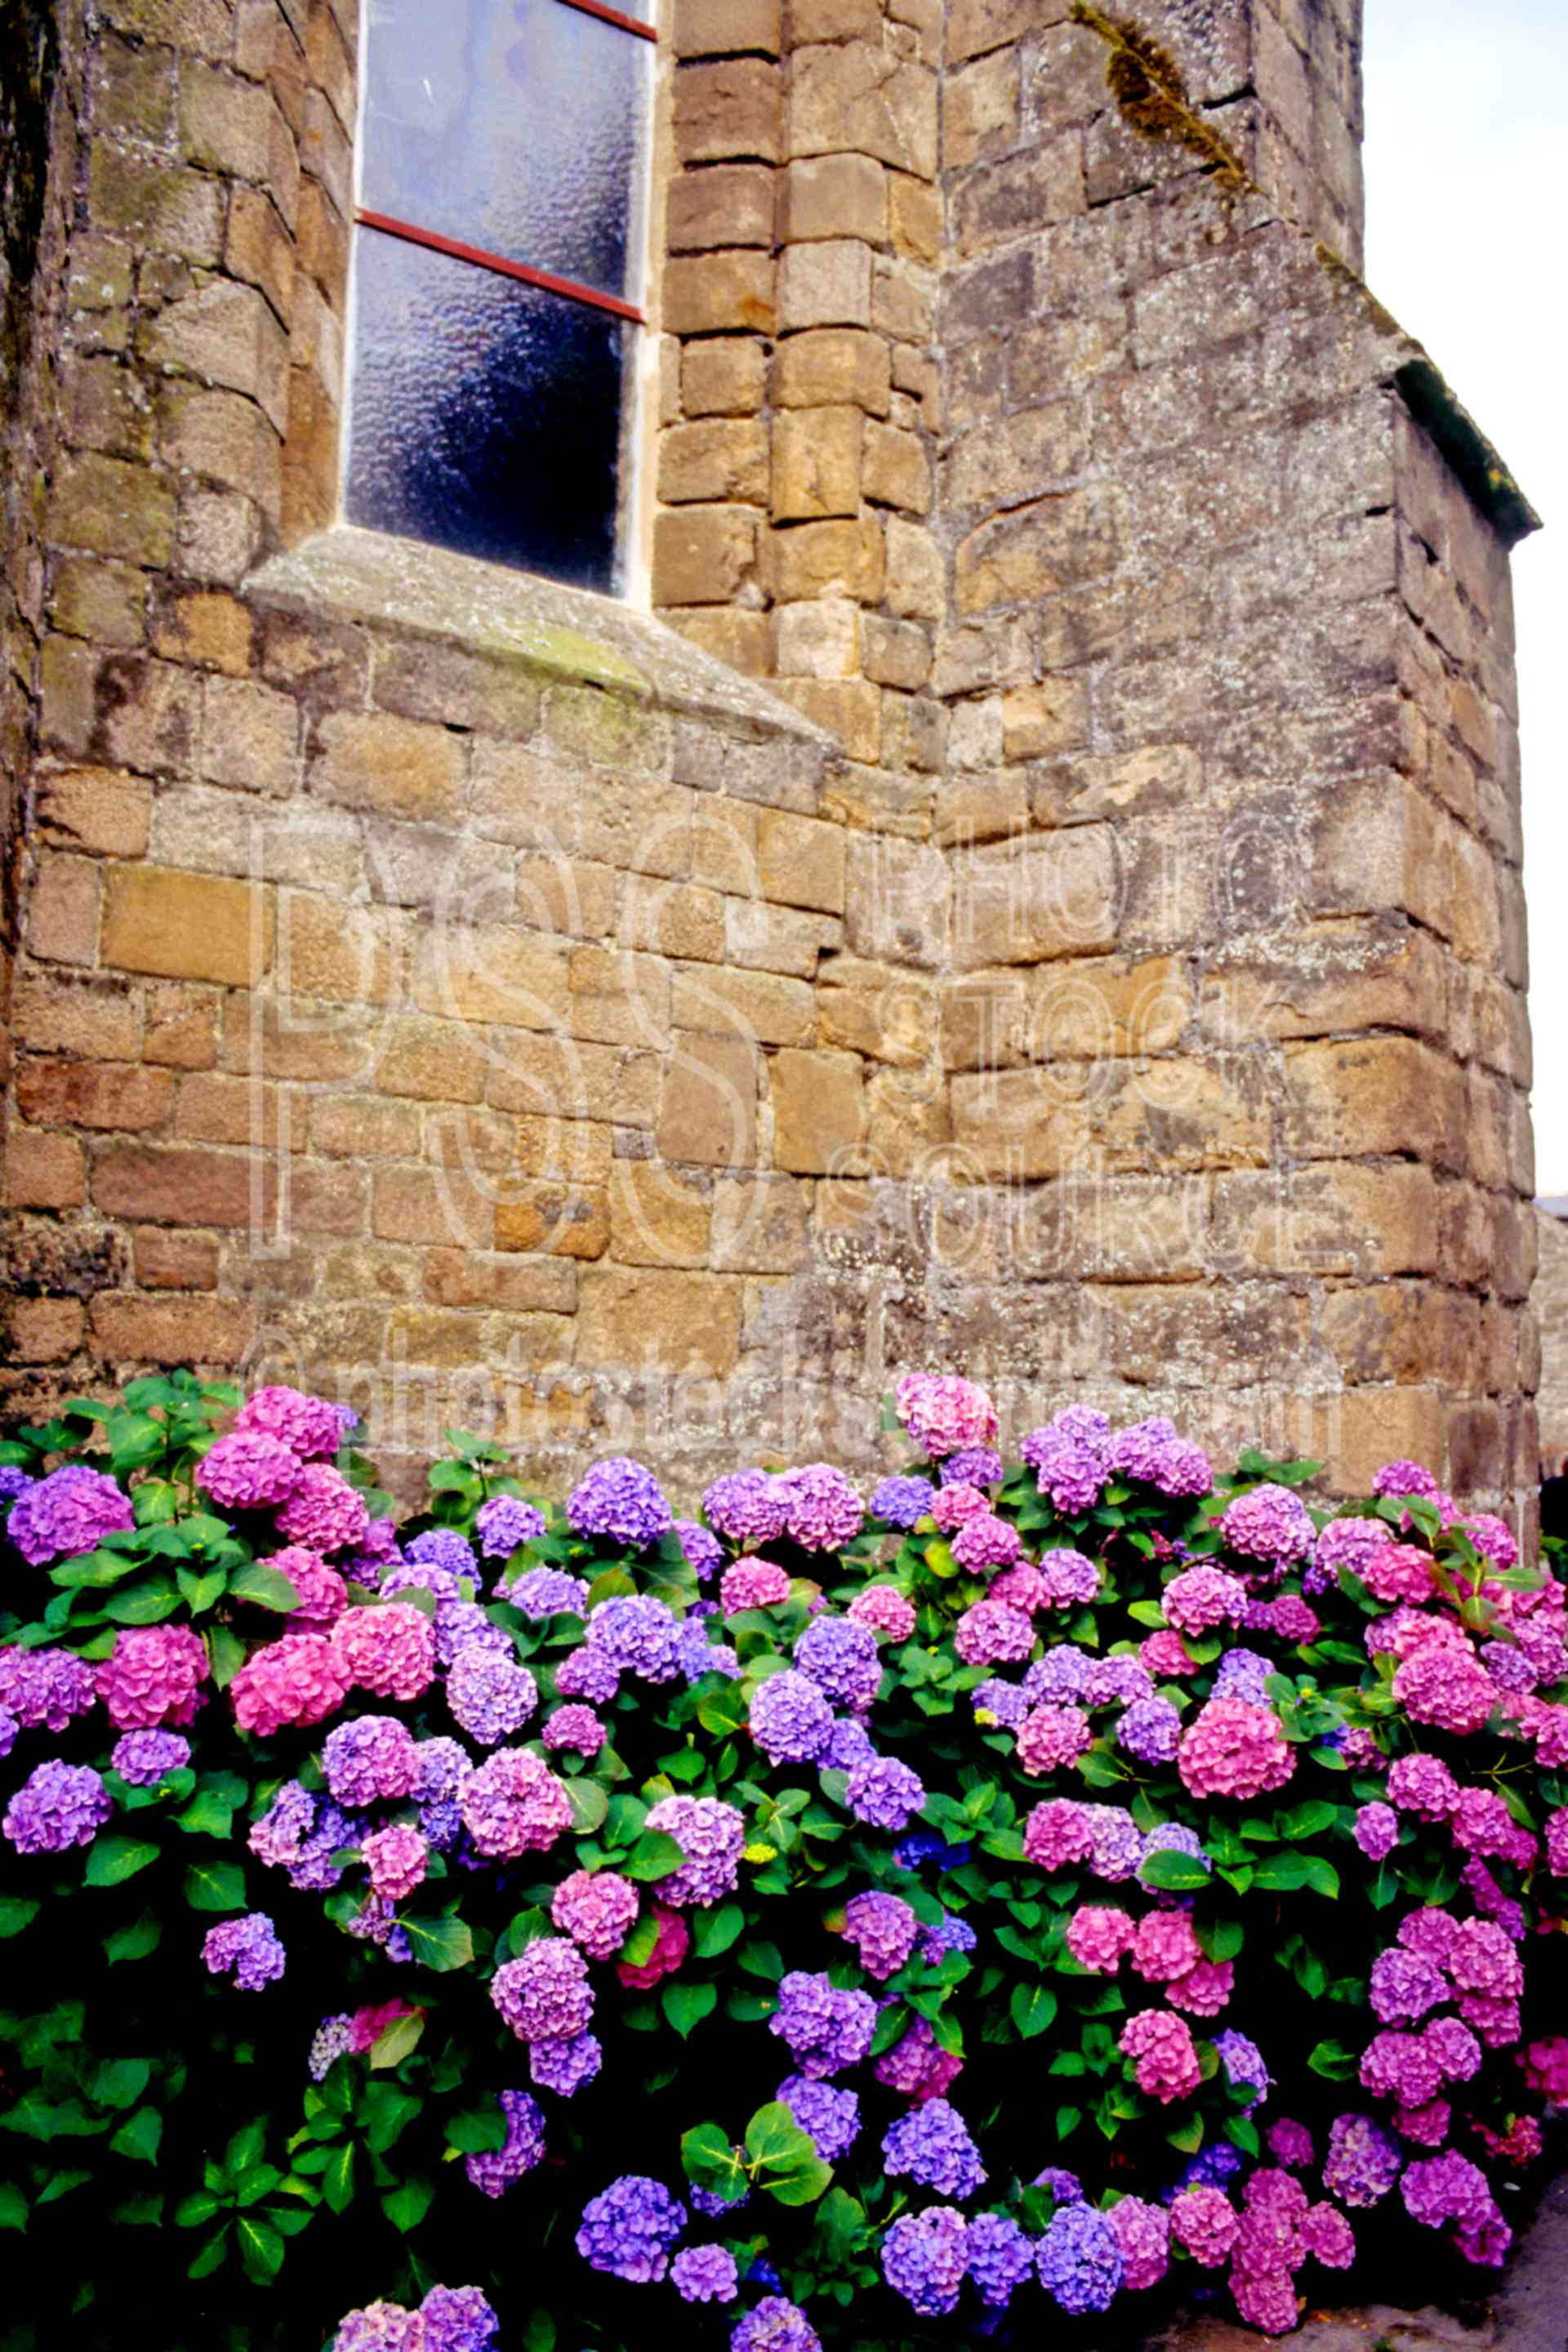 Flowers against Wall,europe,hydrangea,stone,window,flowers,plants